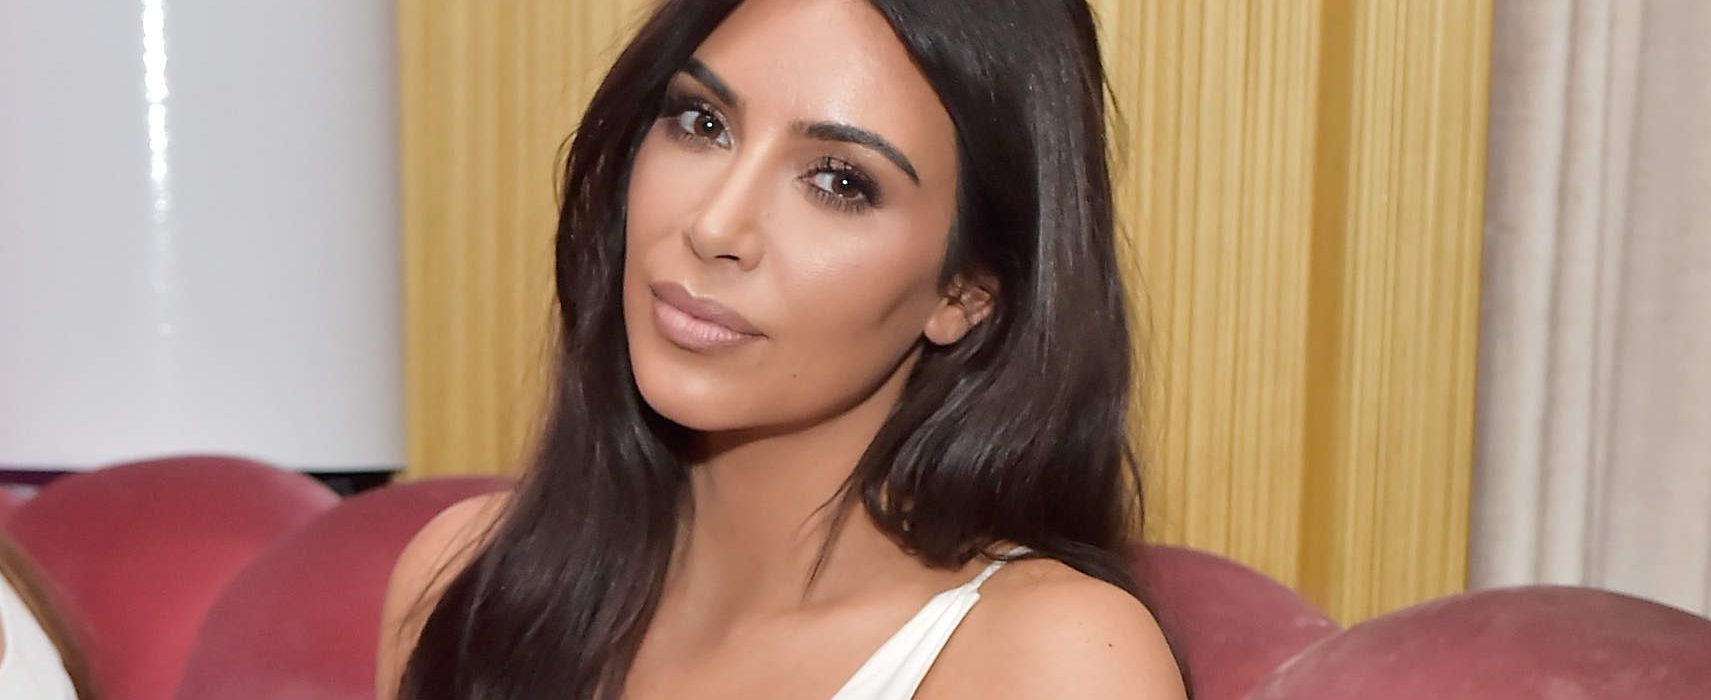 Kim Kardashian jednom fotkom zaradi više nego Donald Trump za godinu dana